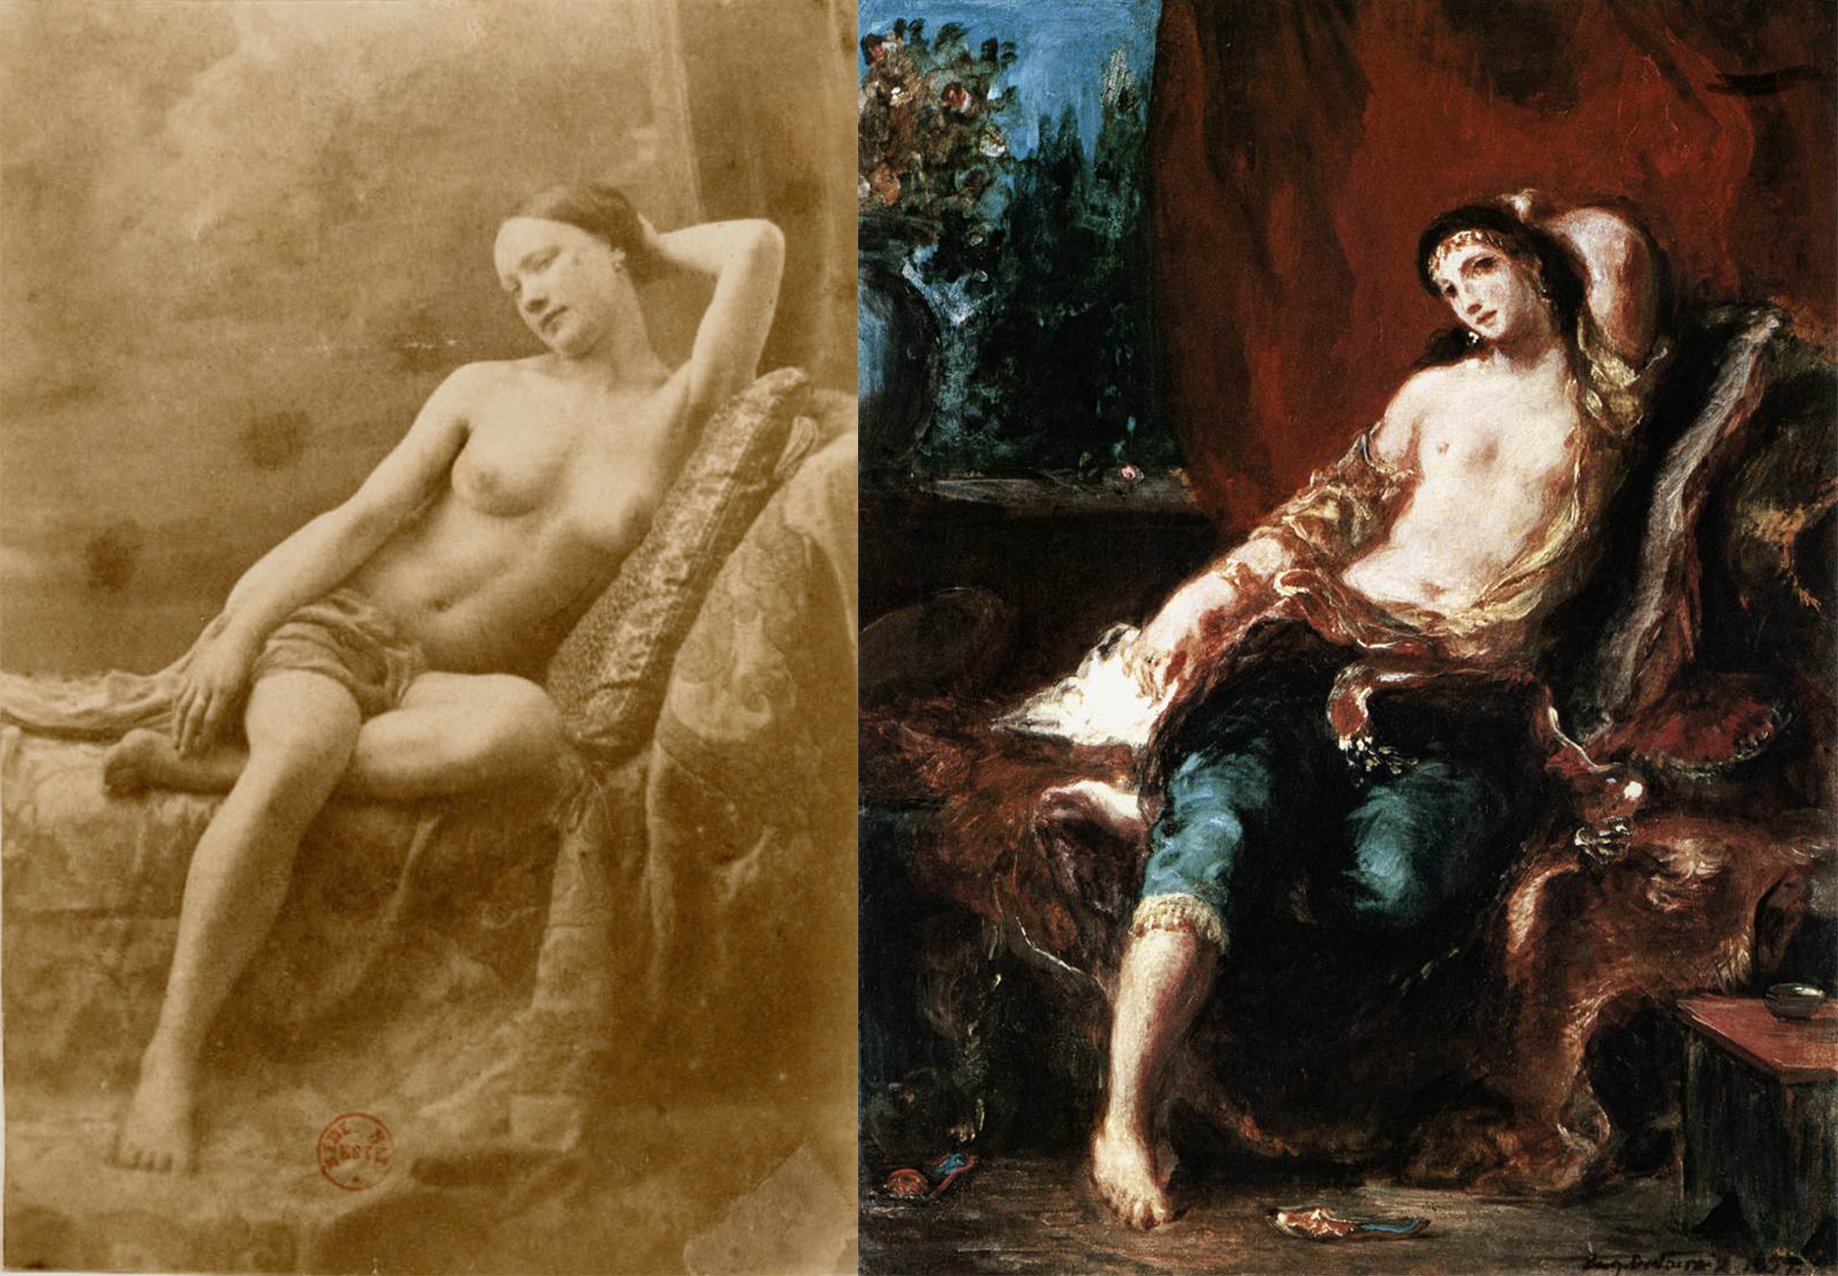 Odalisca / Odalisca by Eugène Durieu / Eugène Delacroix - 1833/1857 Colección privada